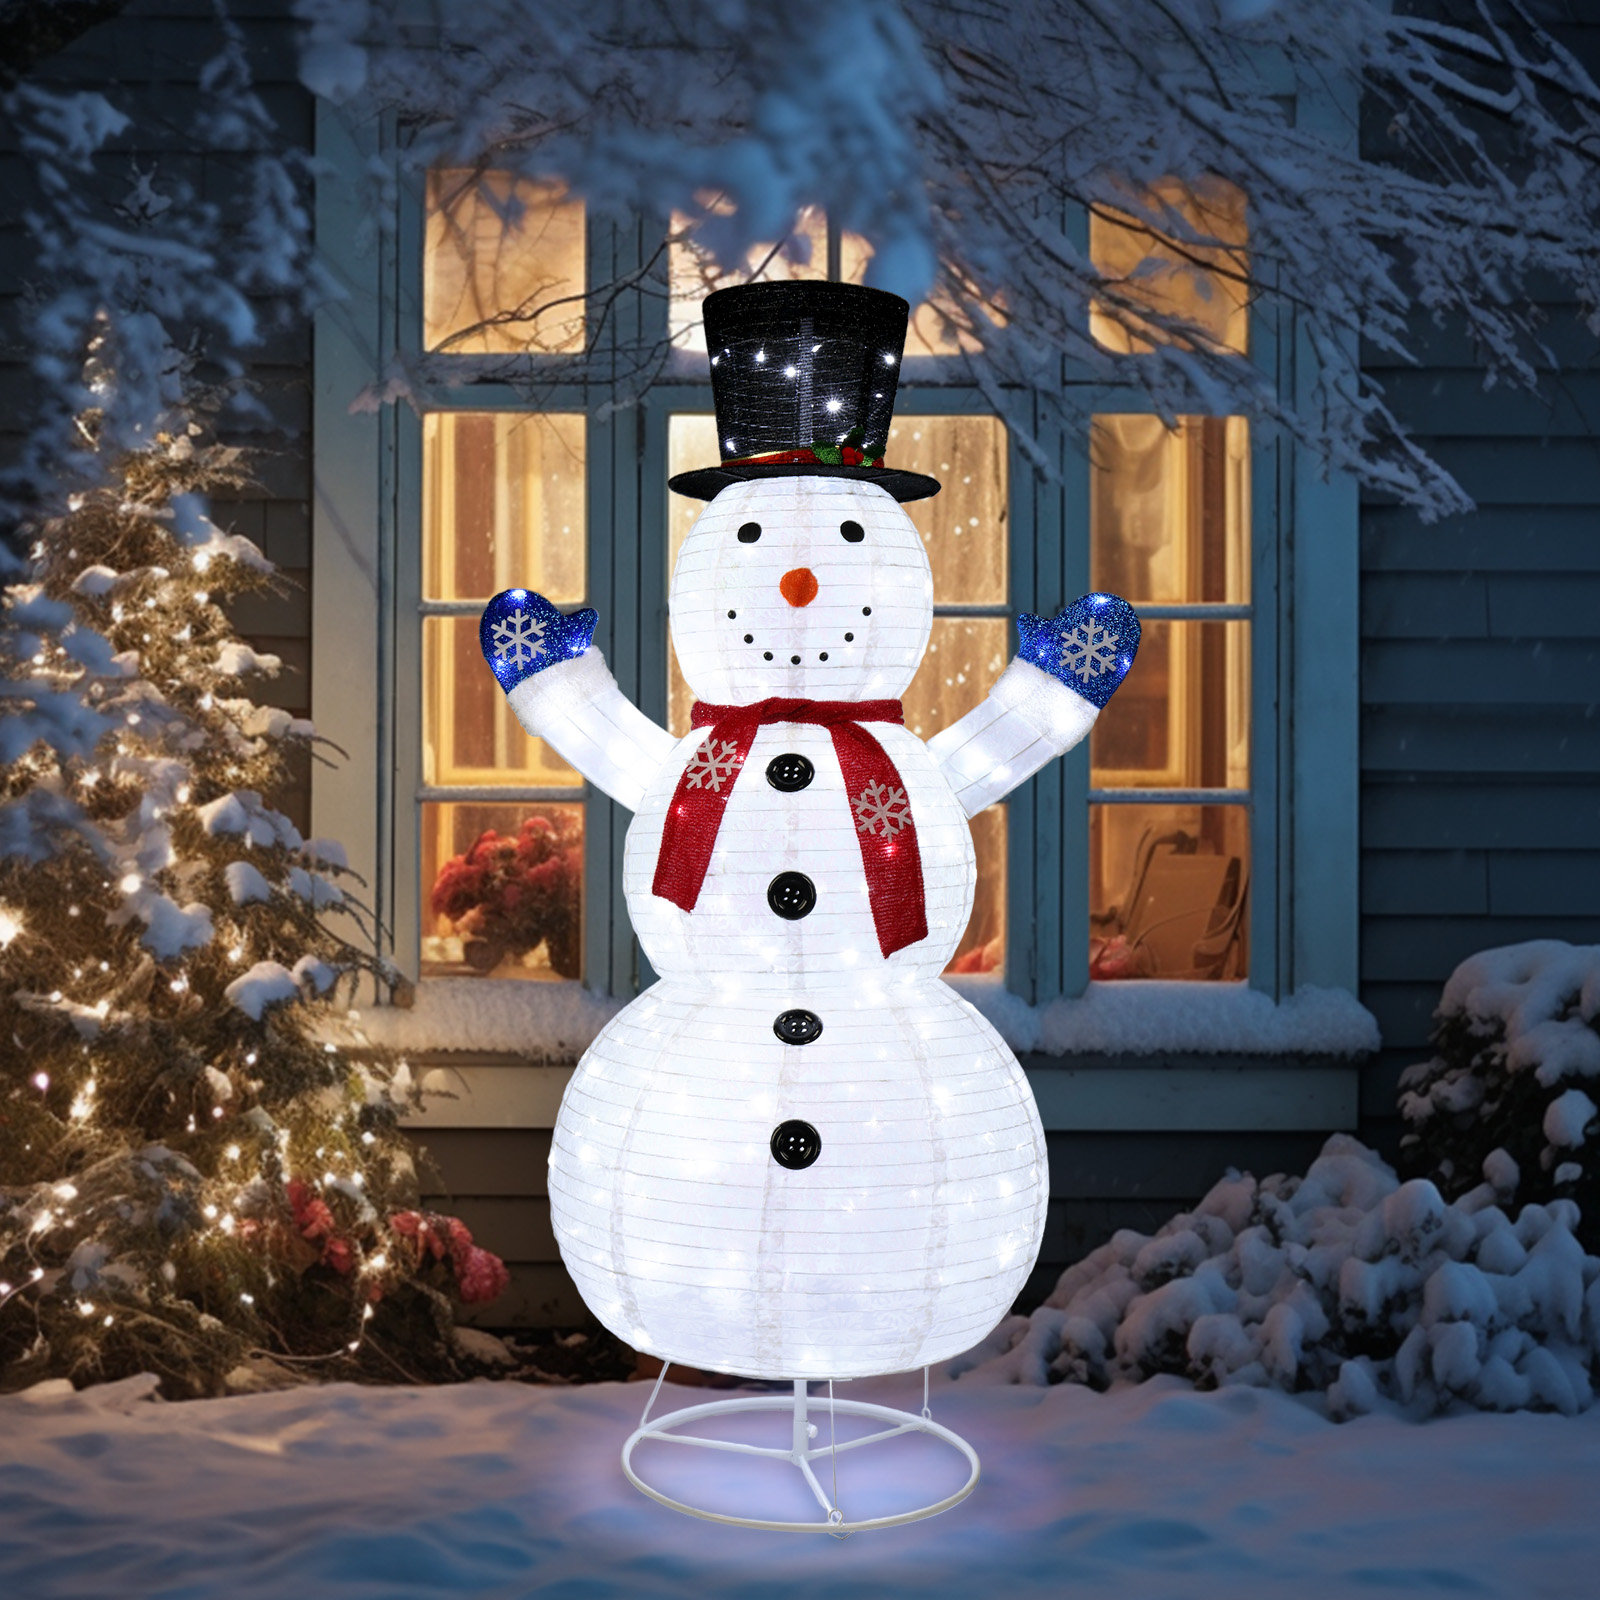 https://assets.wfcdn.com/im/24887194/compr-r85/2562/256229370/jaicie-6ft-lighted-pop-up-snowman-christmas-decoration.jpg